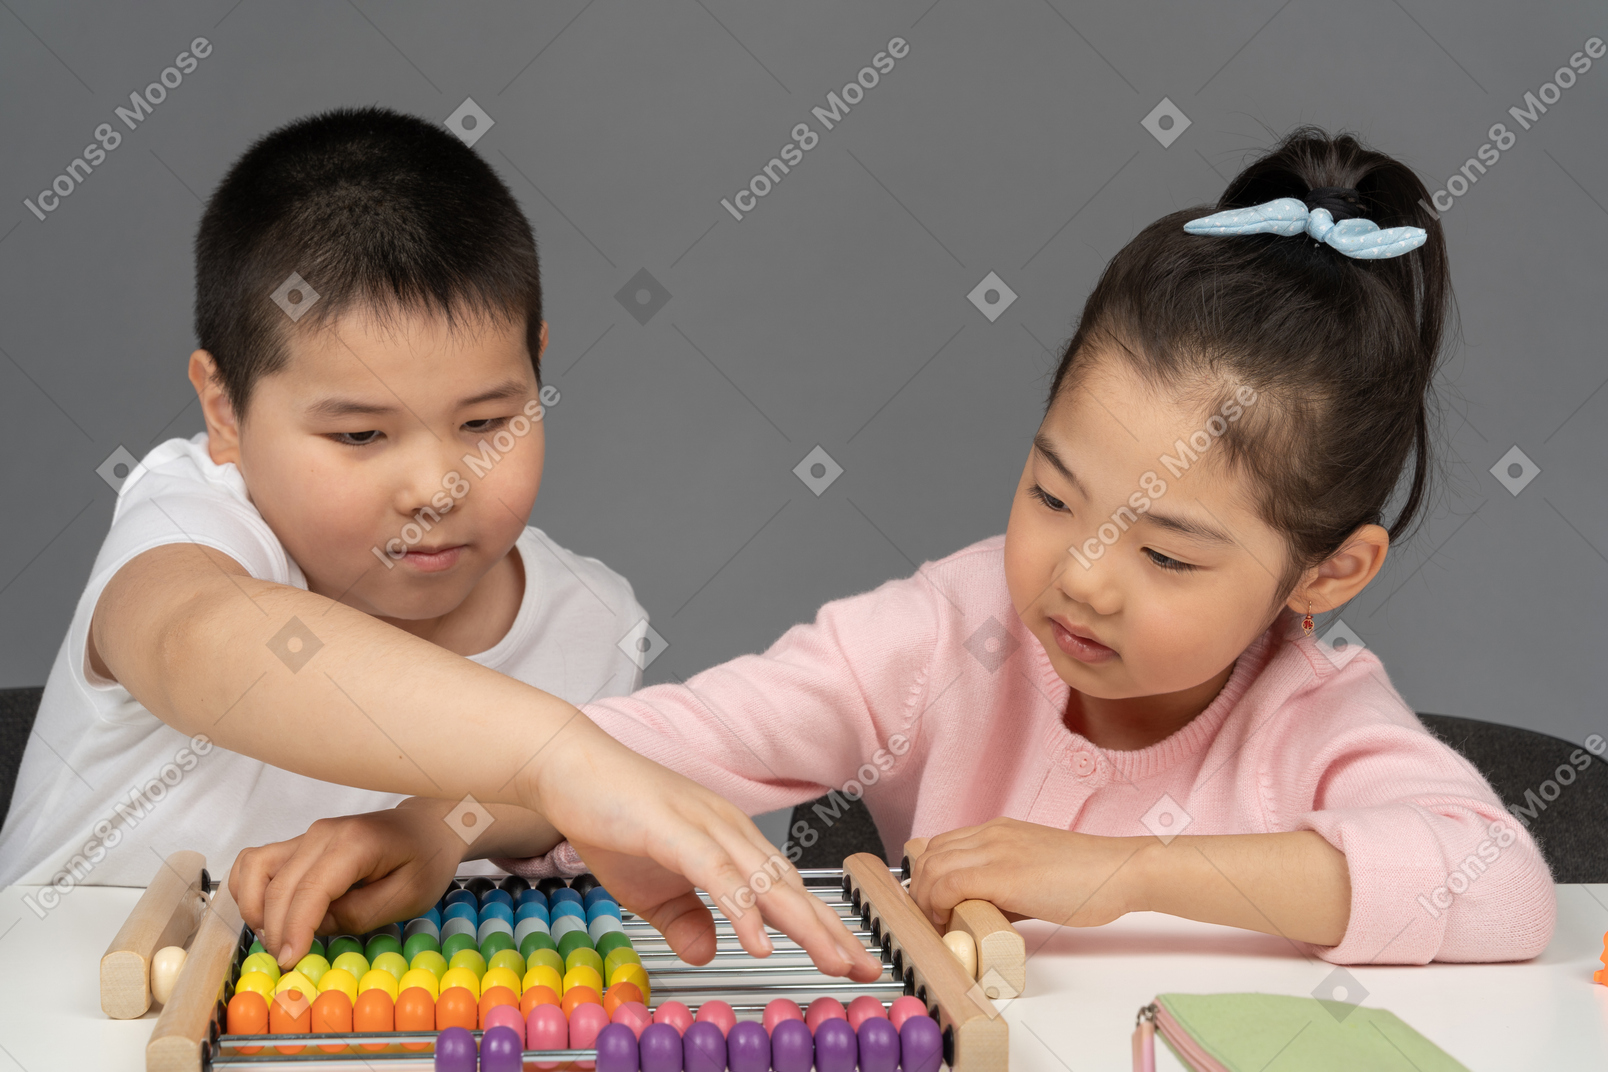 Мальчик и девочка играют на счетах